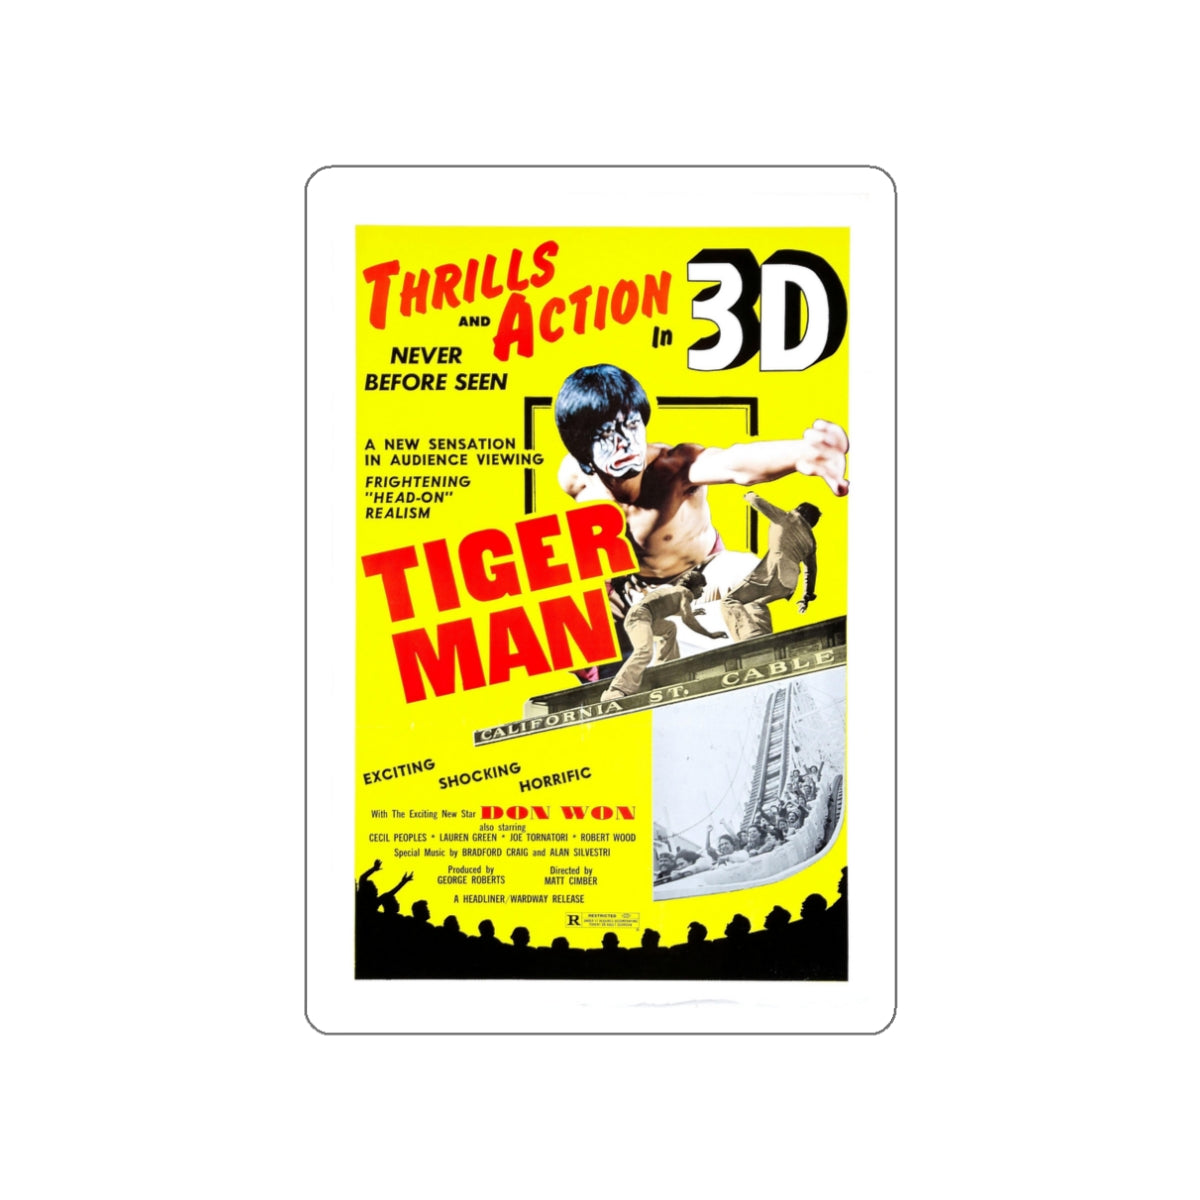 TIGER MAN 1983 Movie Poster STICKER Vinyl Die-Cut Decal-White-The Sticker Space